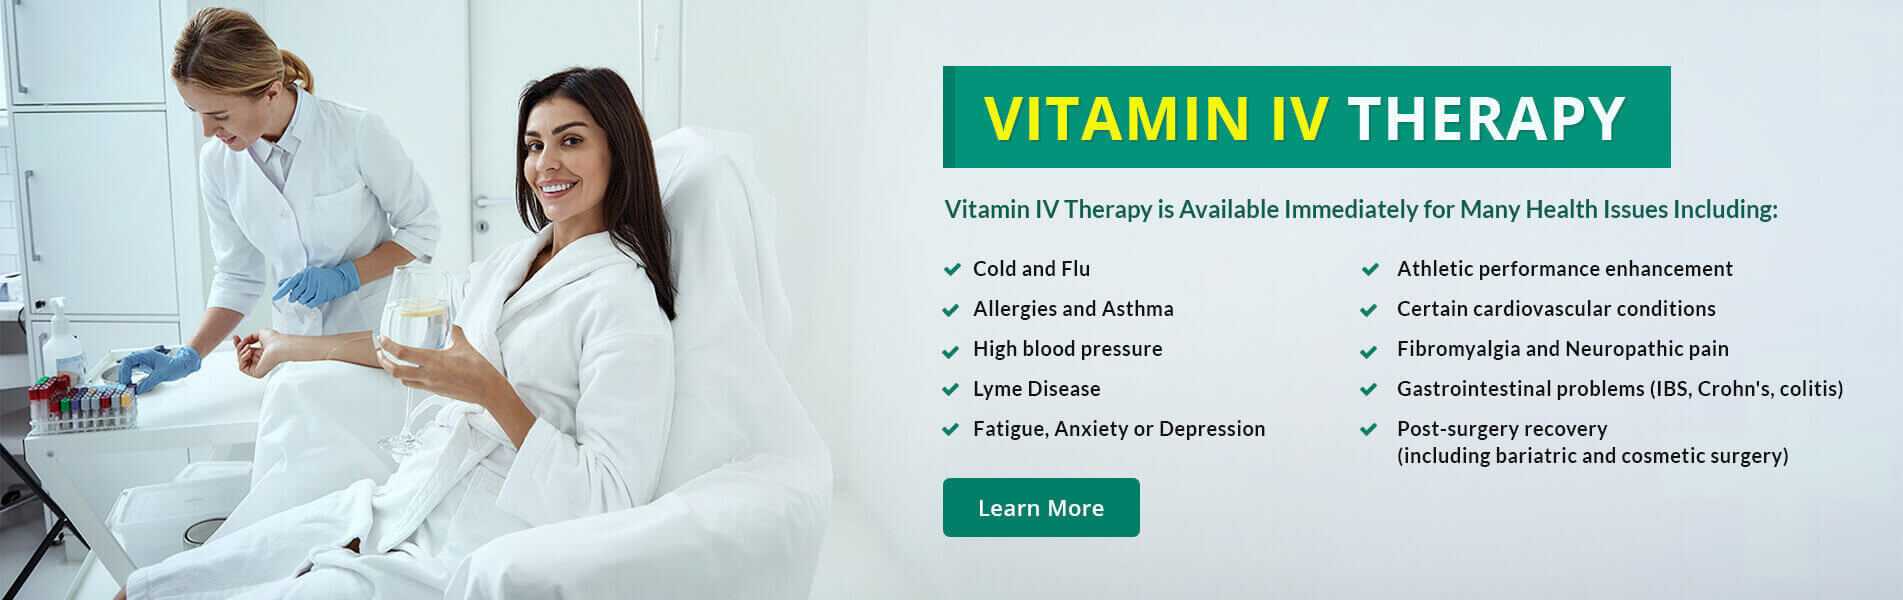 Vitamin VI Therapy